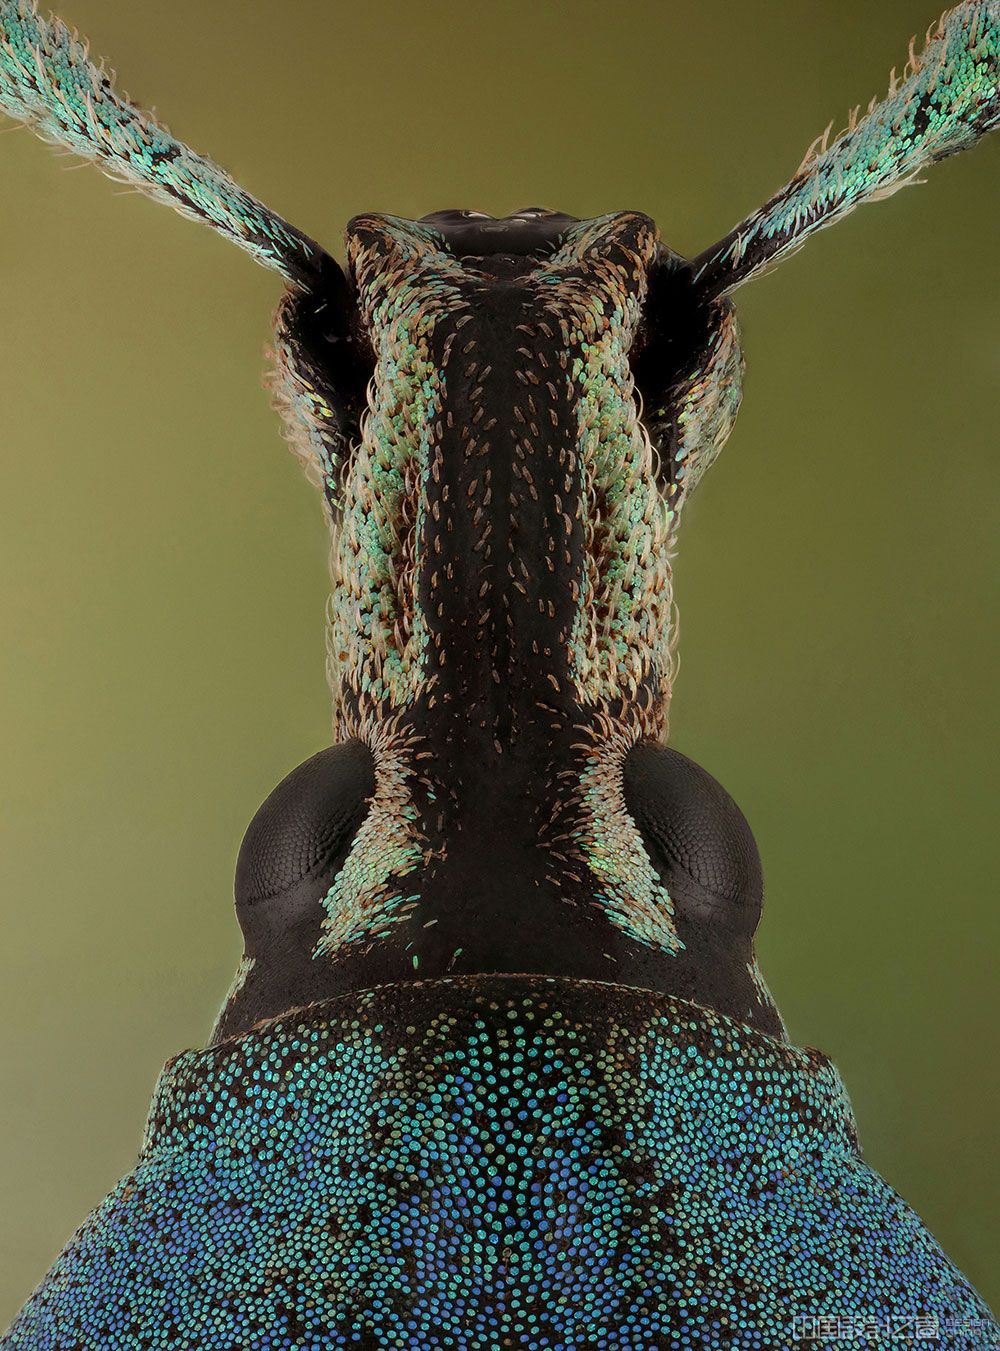 摄影师捕捉到了世界各地罕见的甲虫